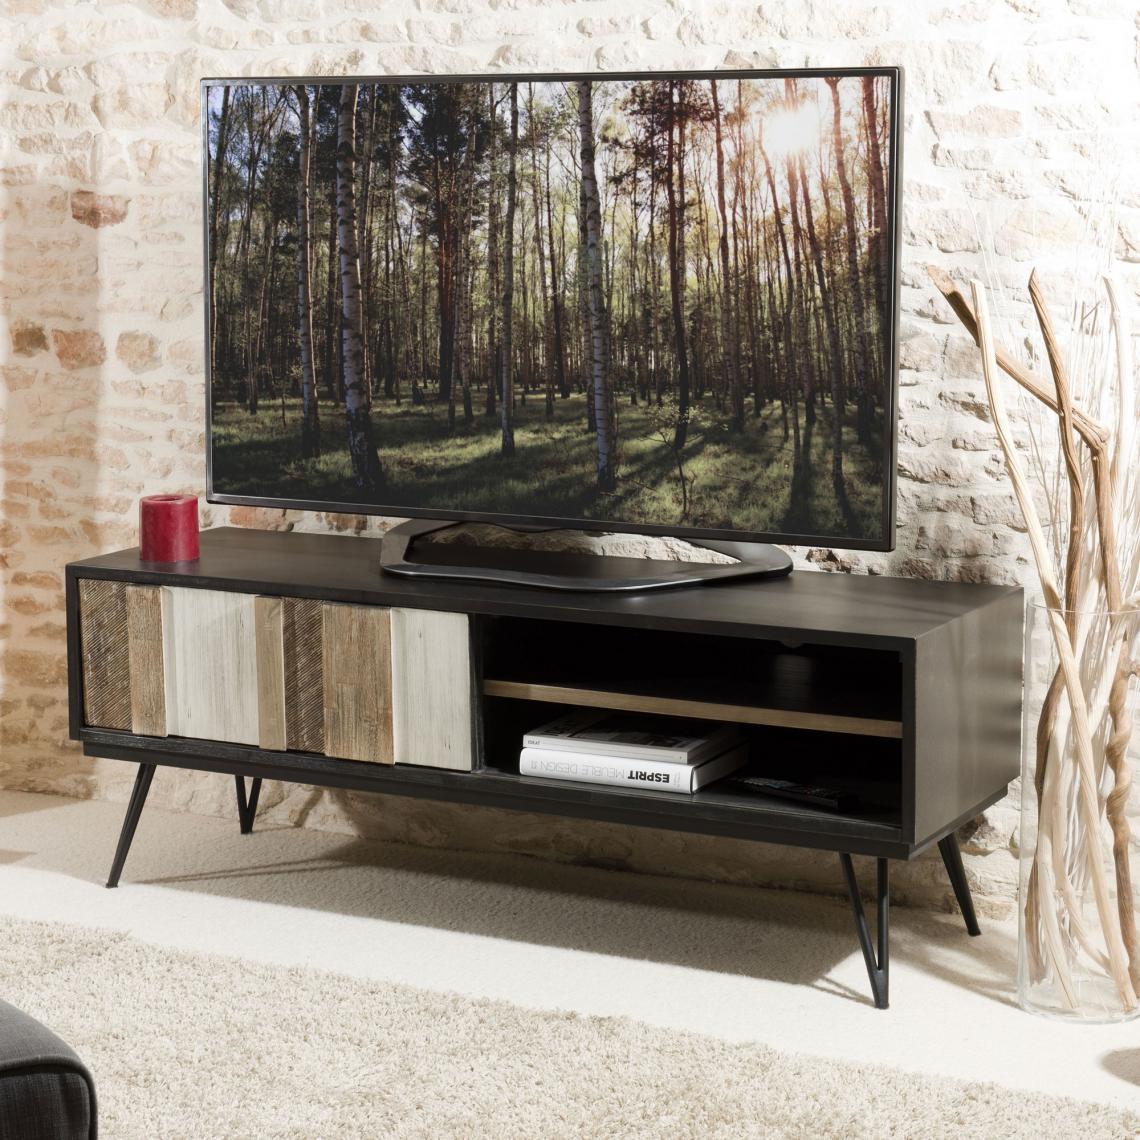 MACABANE - Meuble TV 1 porte coulissante 2 niches pieds épingle style industriel - Multicolore - Meubles TV, Hi-Fi